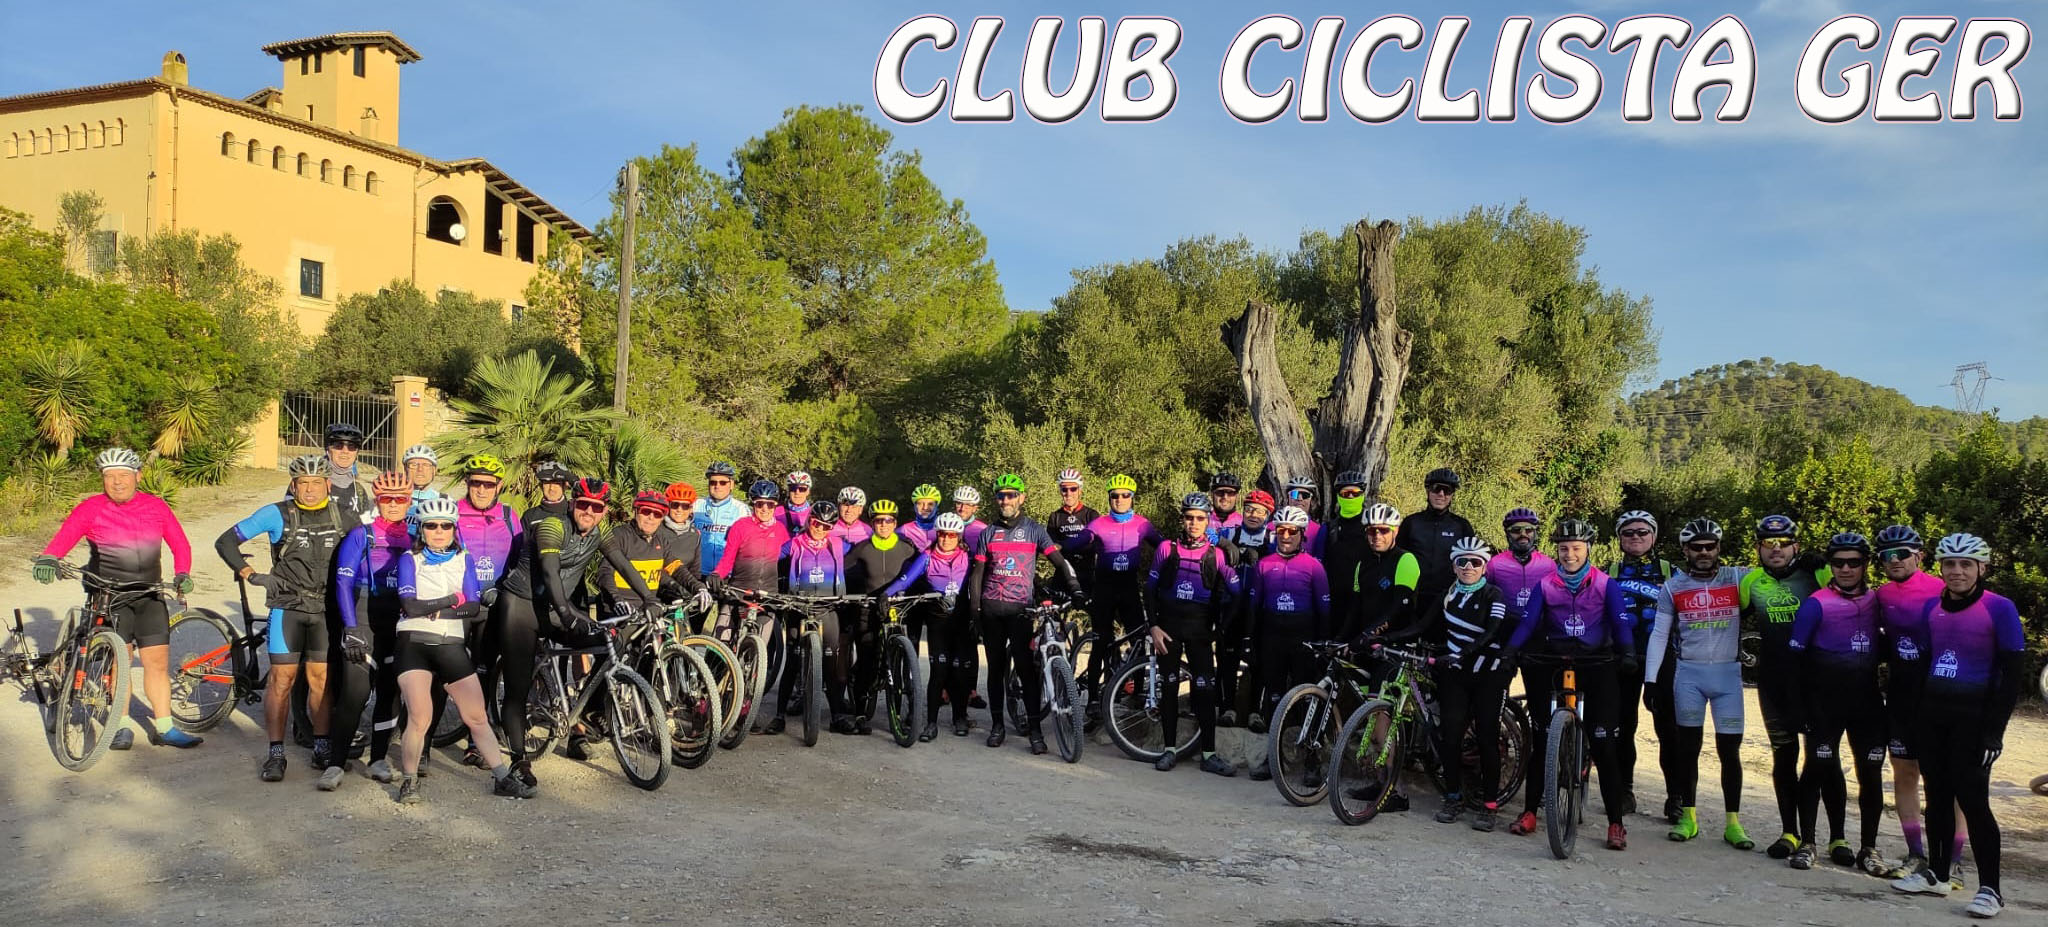 Club Ciclista G.E.R